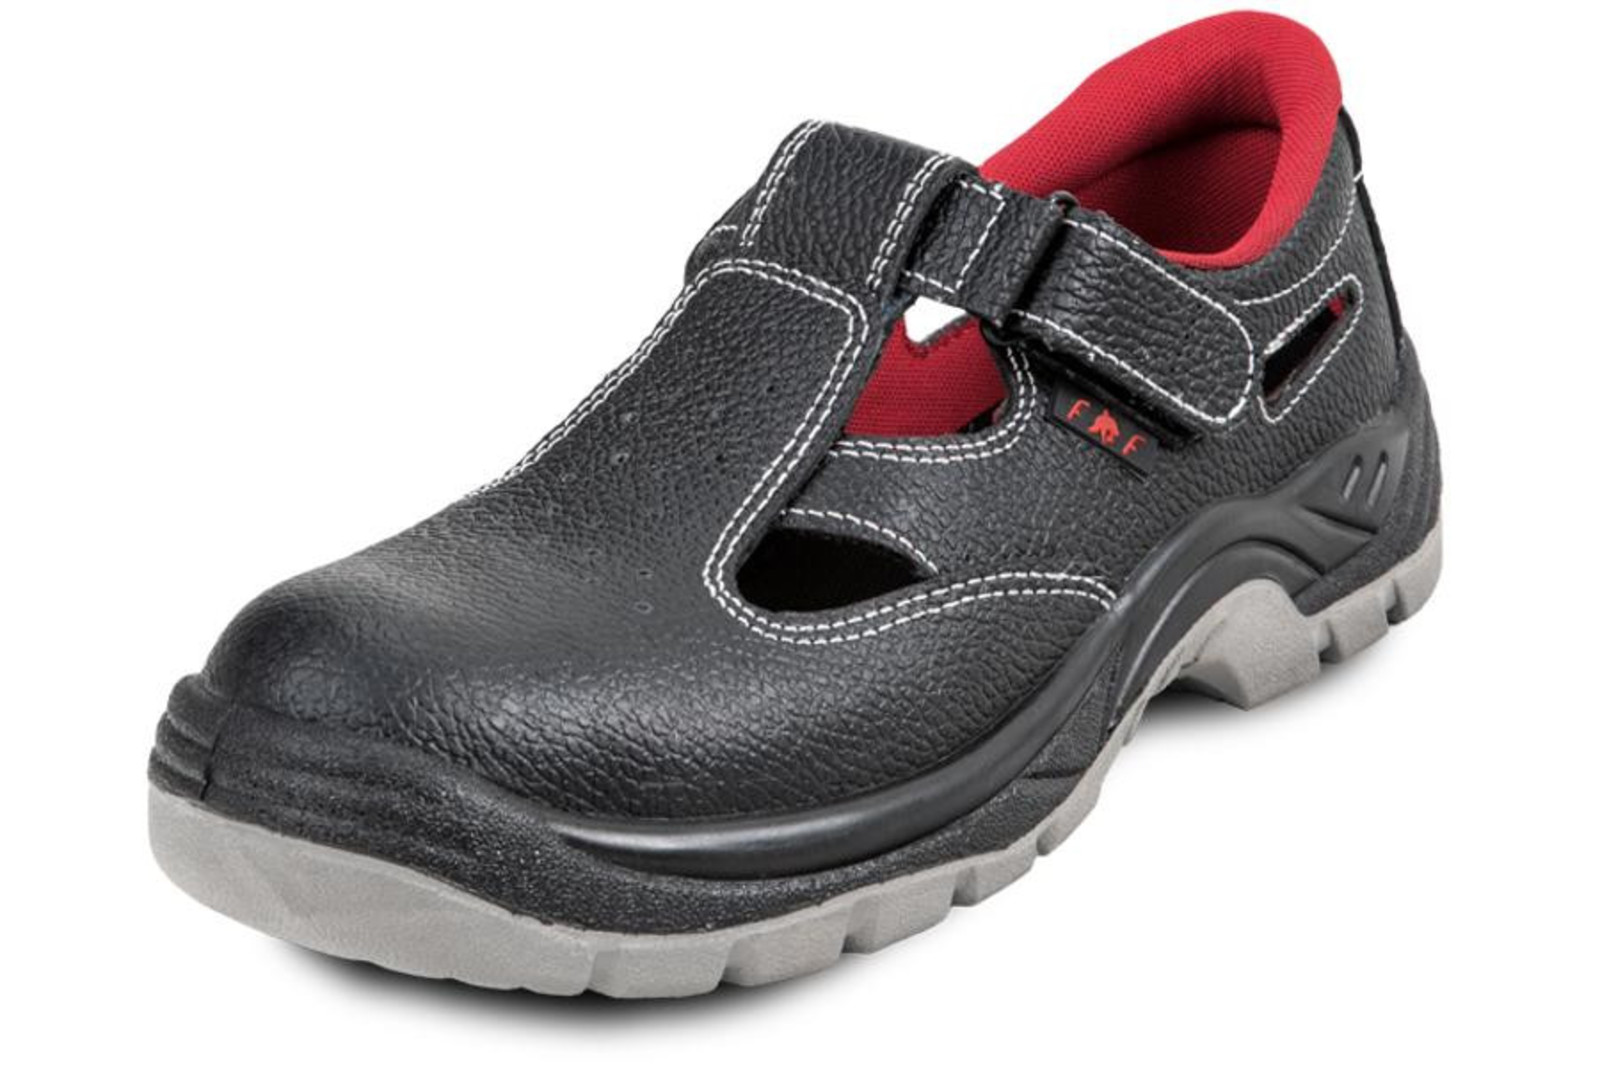 Pracovné sandále Bonn SC 01-002 O1 - veľkosť: 39, farba: čierna